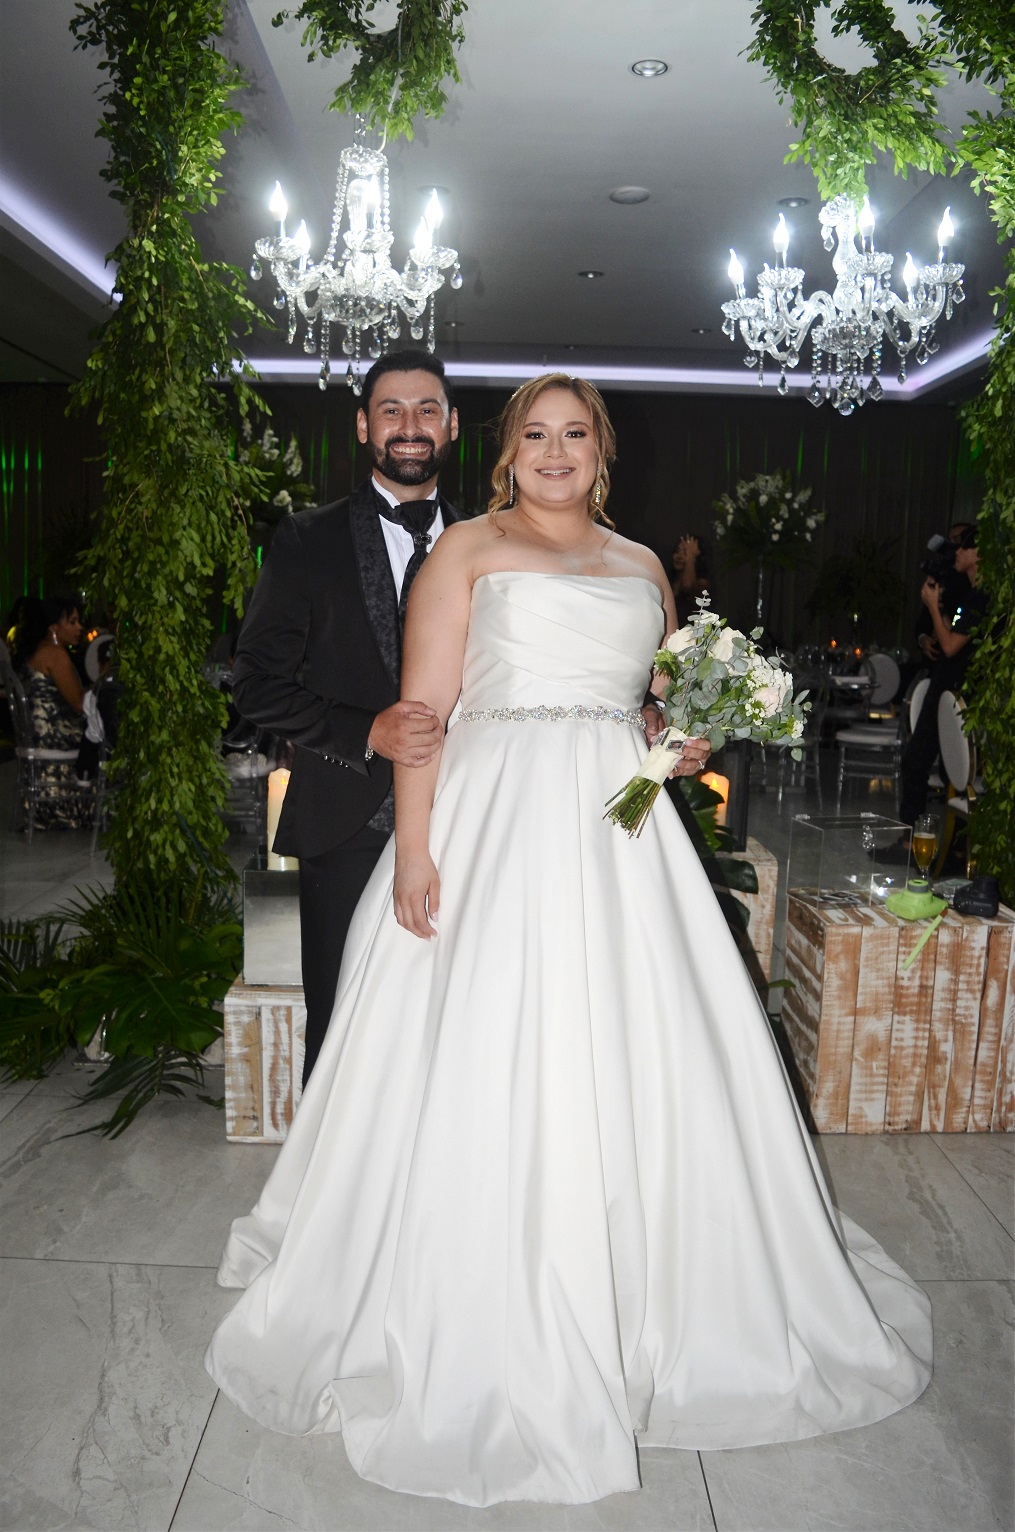 Jaime Cerritos y Cristy Cruz se dan el “Sí acepto” en una boda llena de amor y alegría